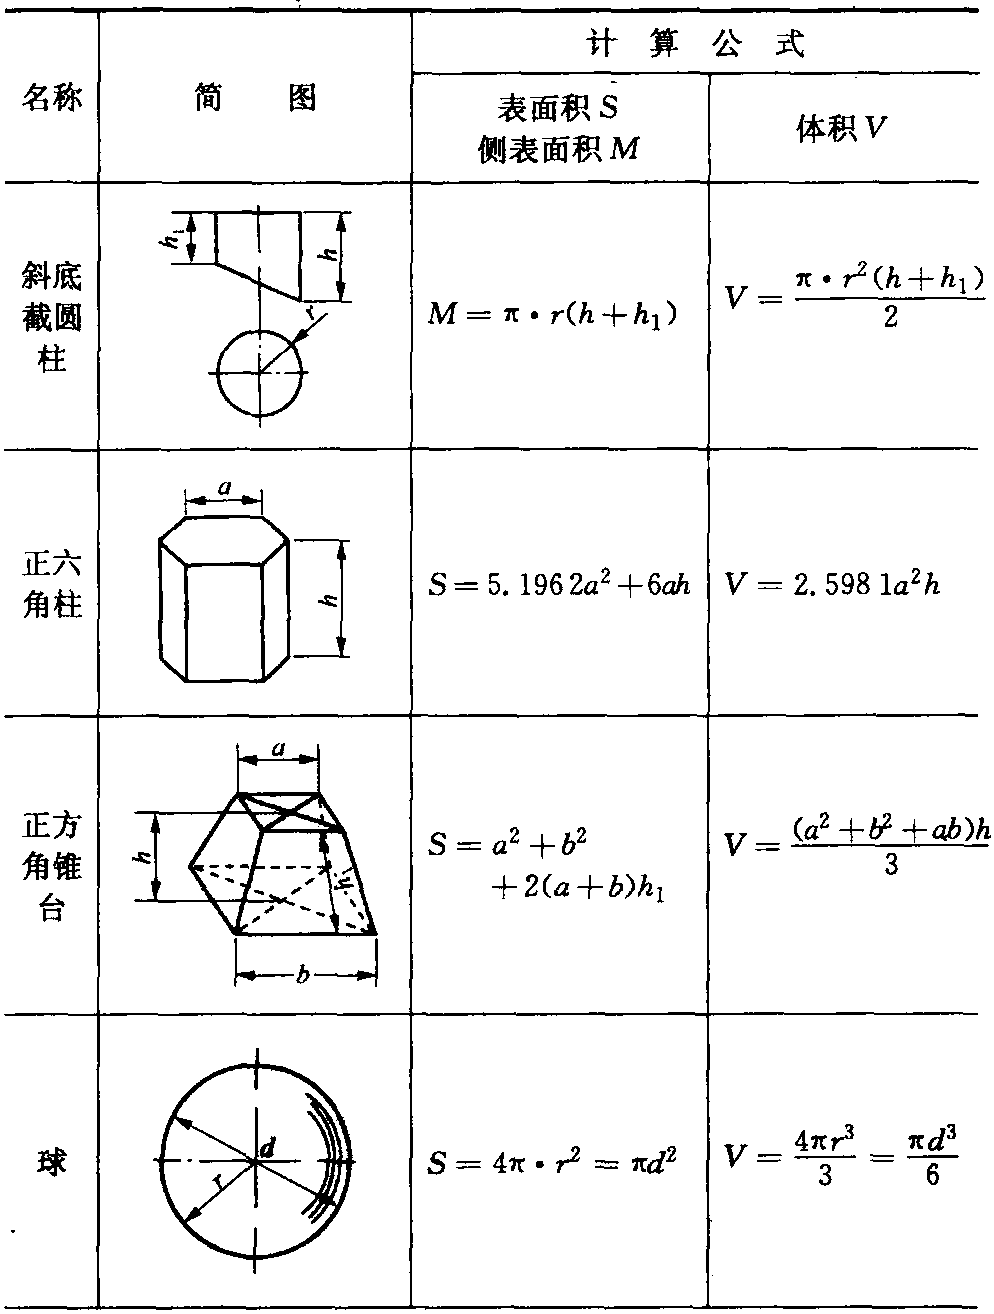 2.2 常用图形体积和表面积计算公式(见表1-2)